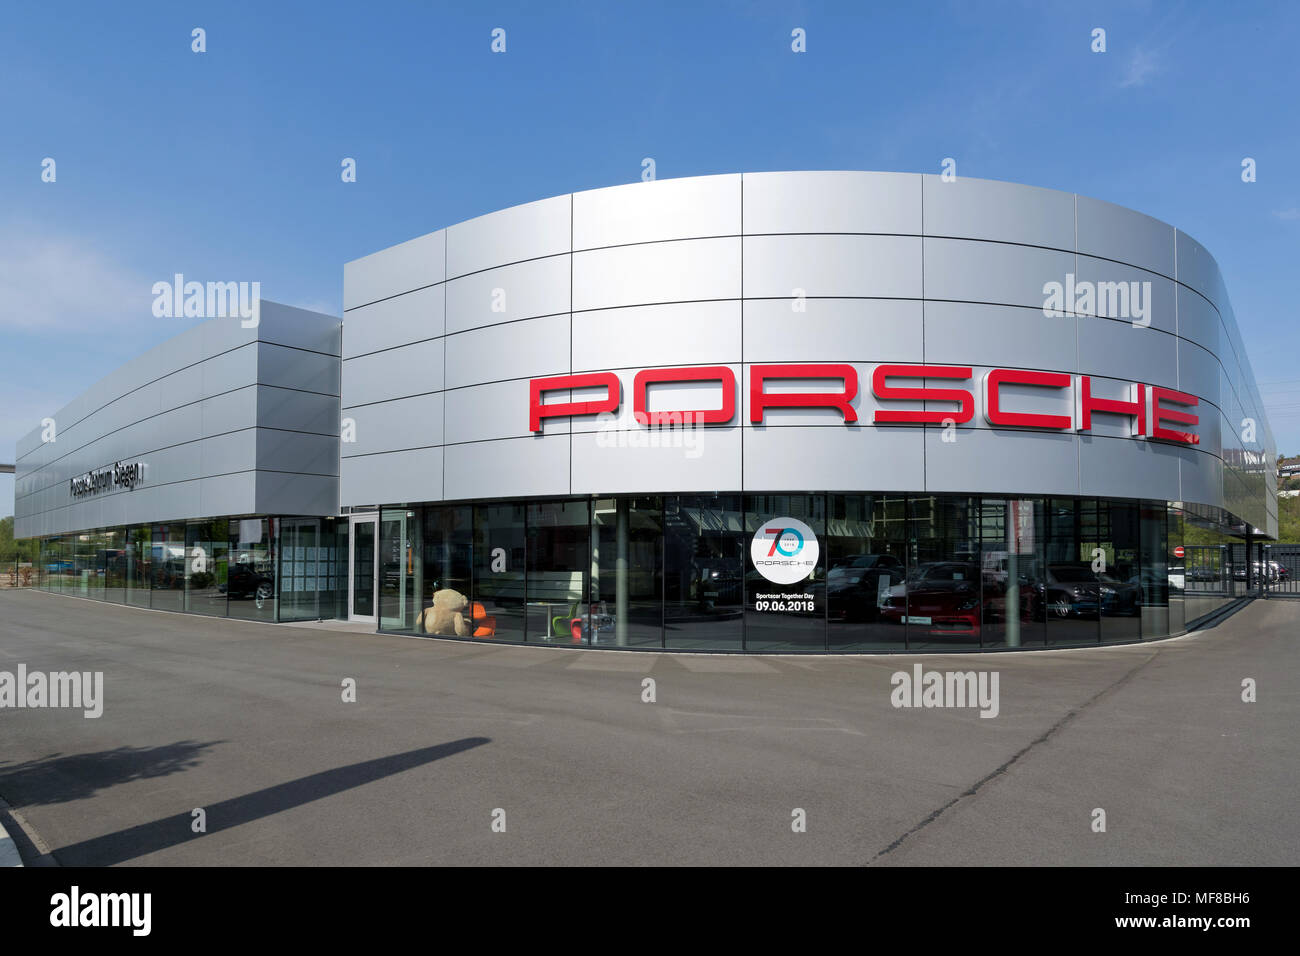 Porsche Zentrum Siegen. Porsche ist ein deutscher Automobilhersteller, spezialisiert auf high-performance Sports Cars, SUVs und Limousinen. Stockfoto